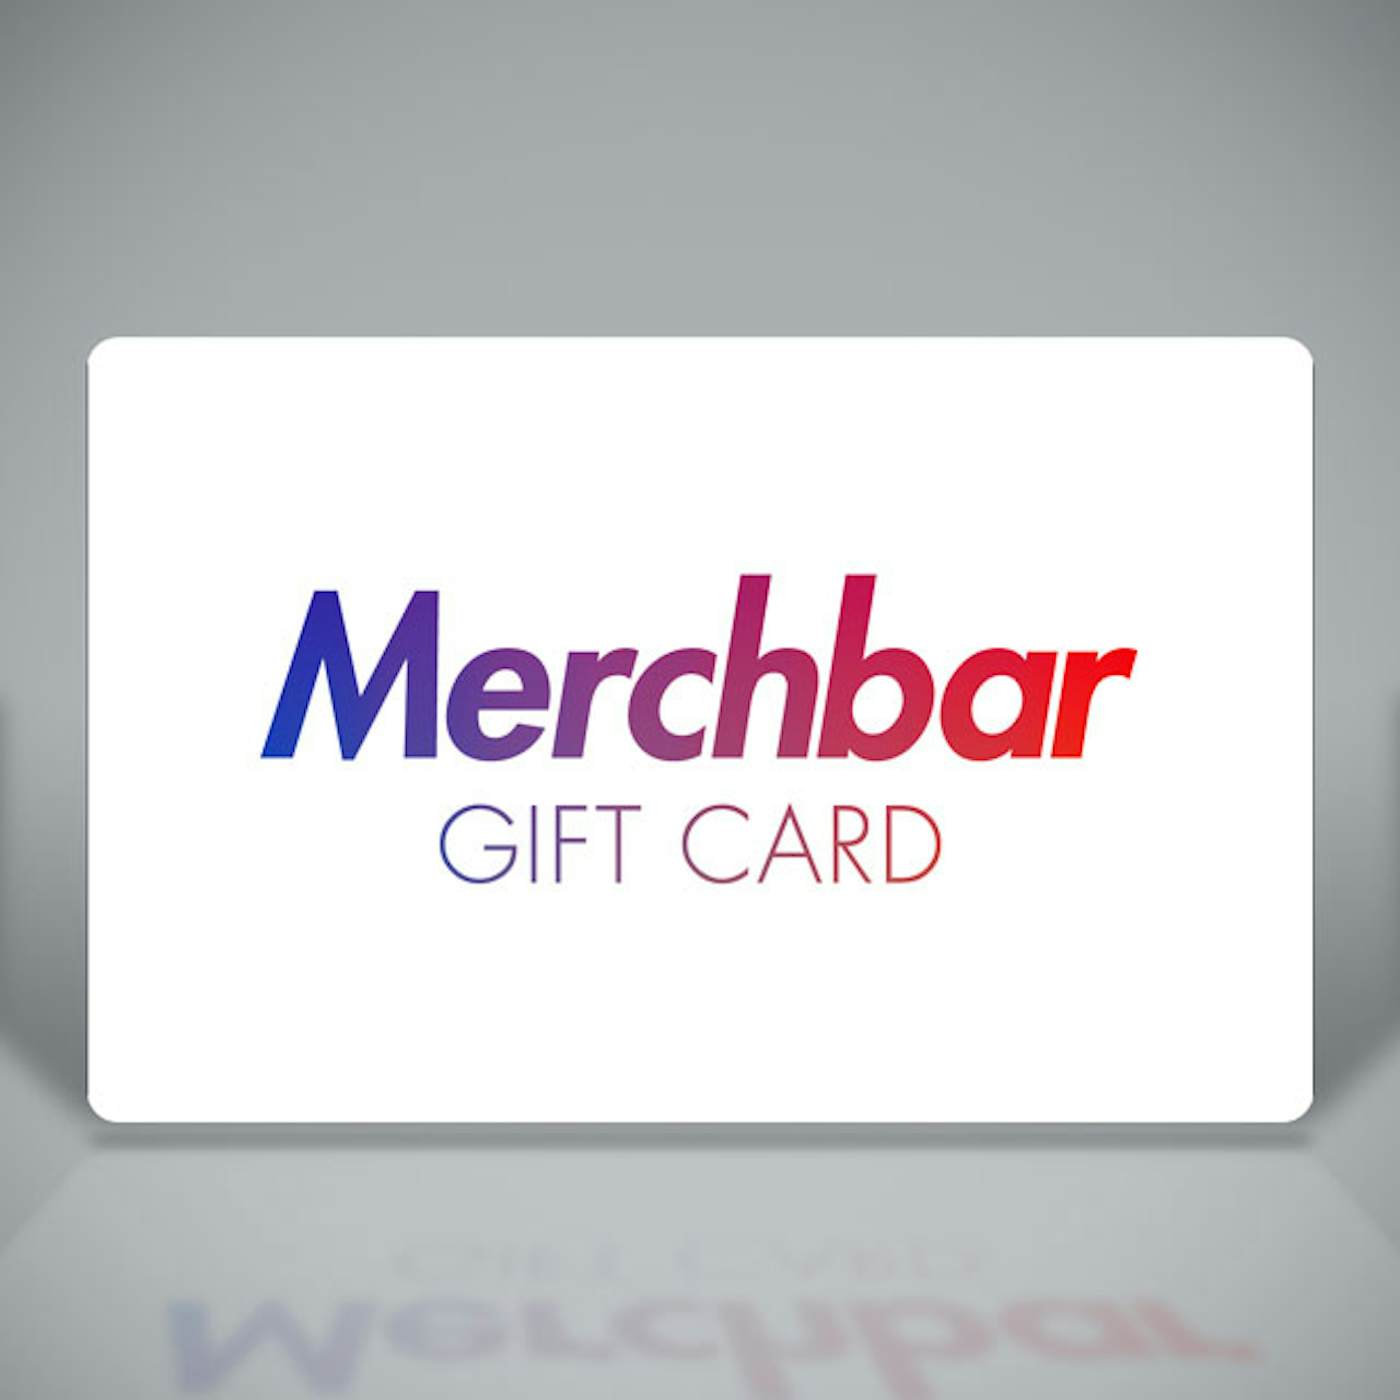 Merchbar Gift Cards The Original Merchbar Gift Card